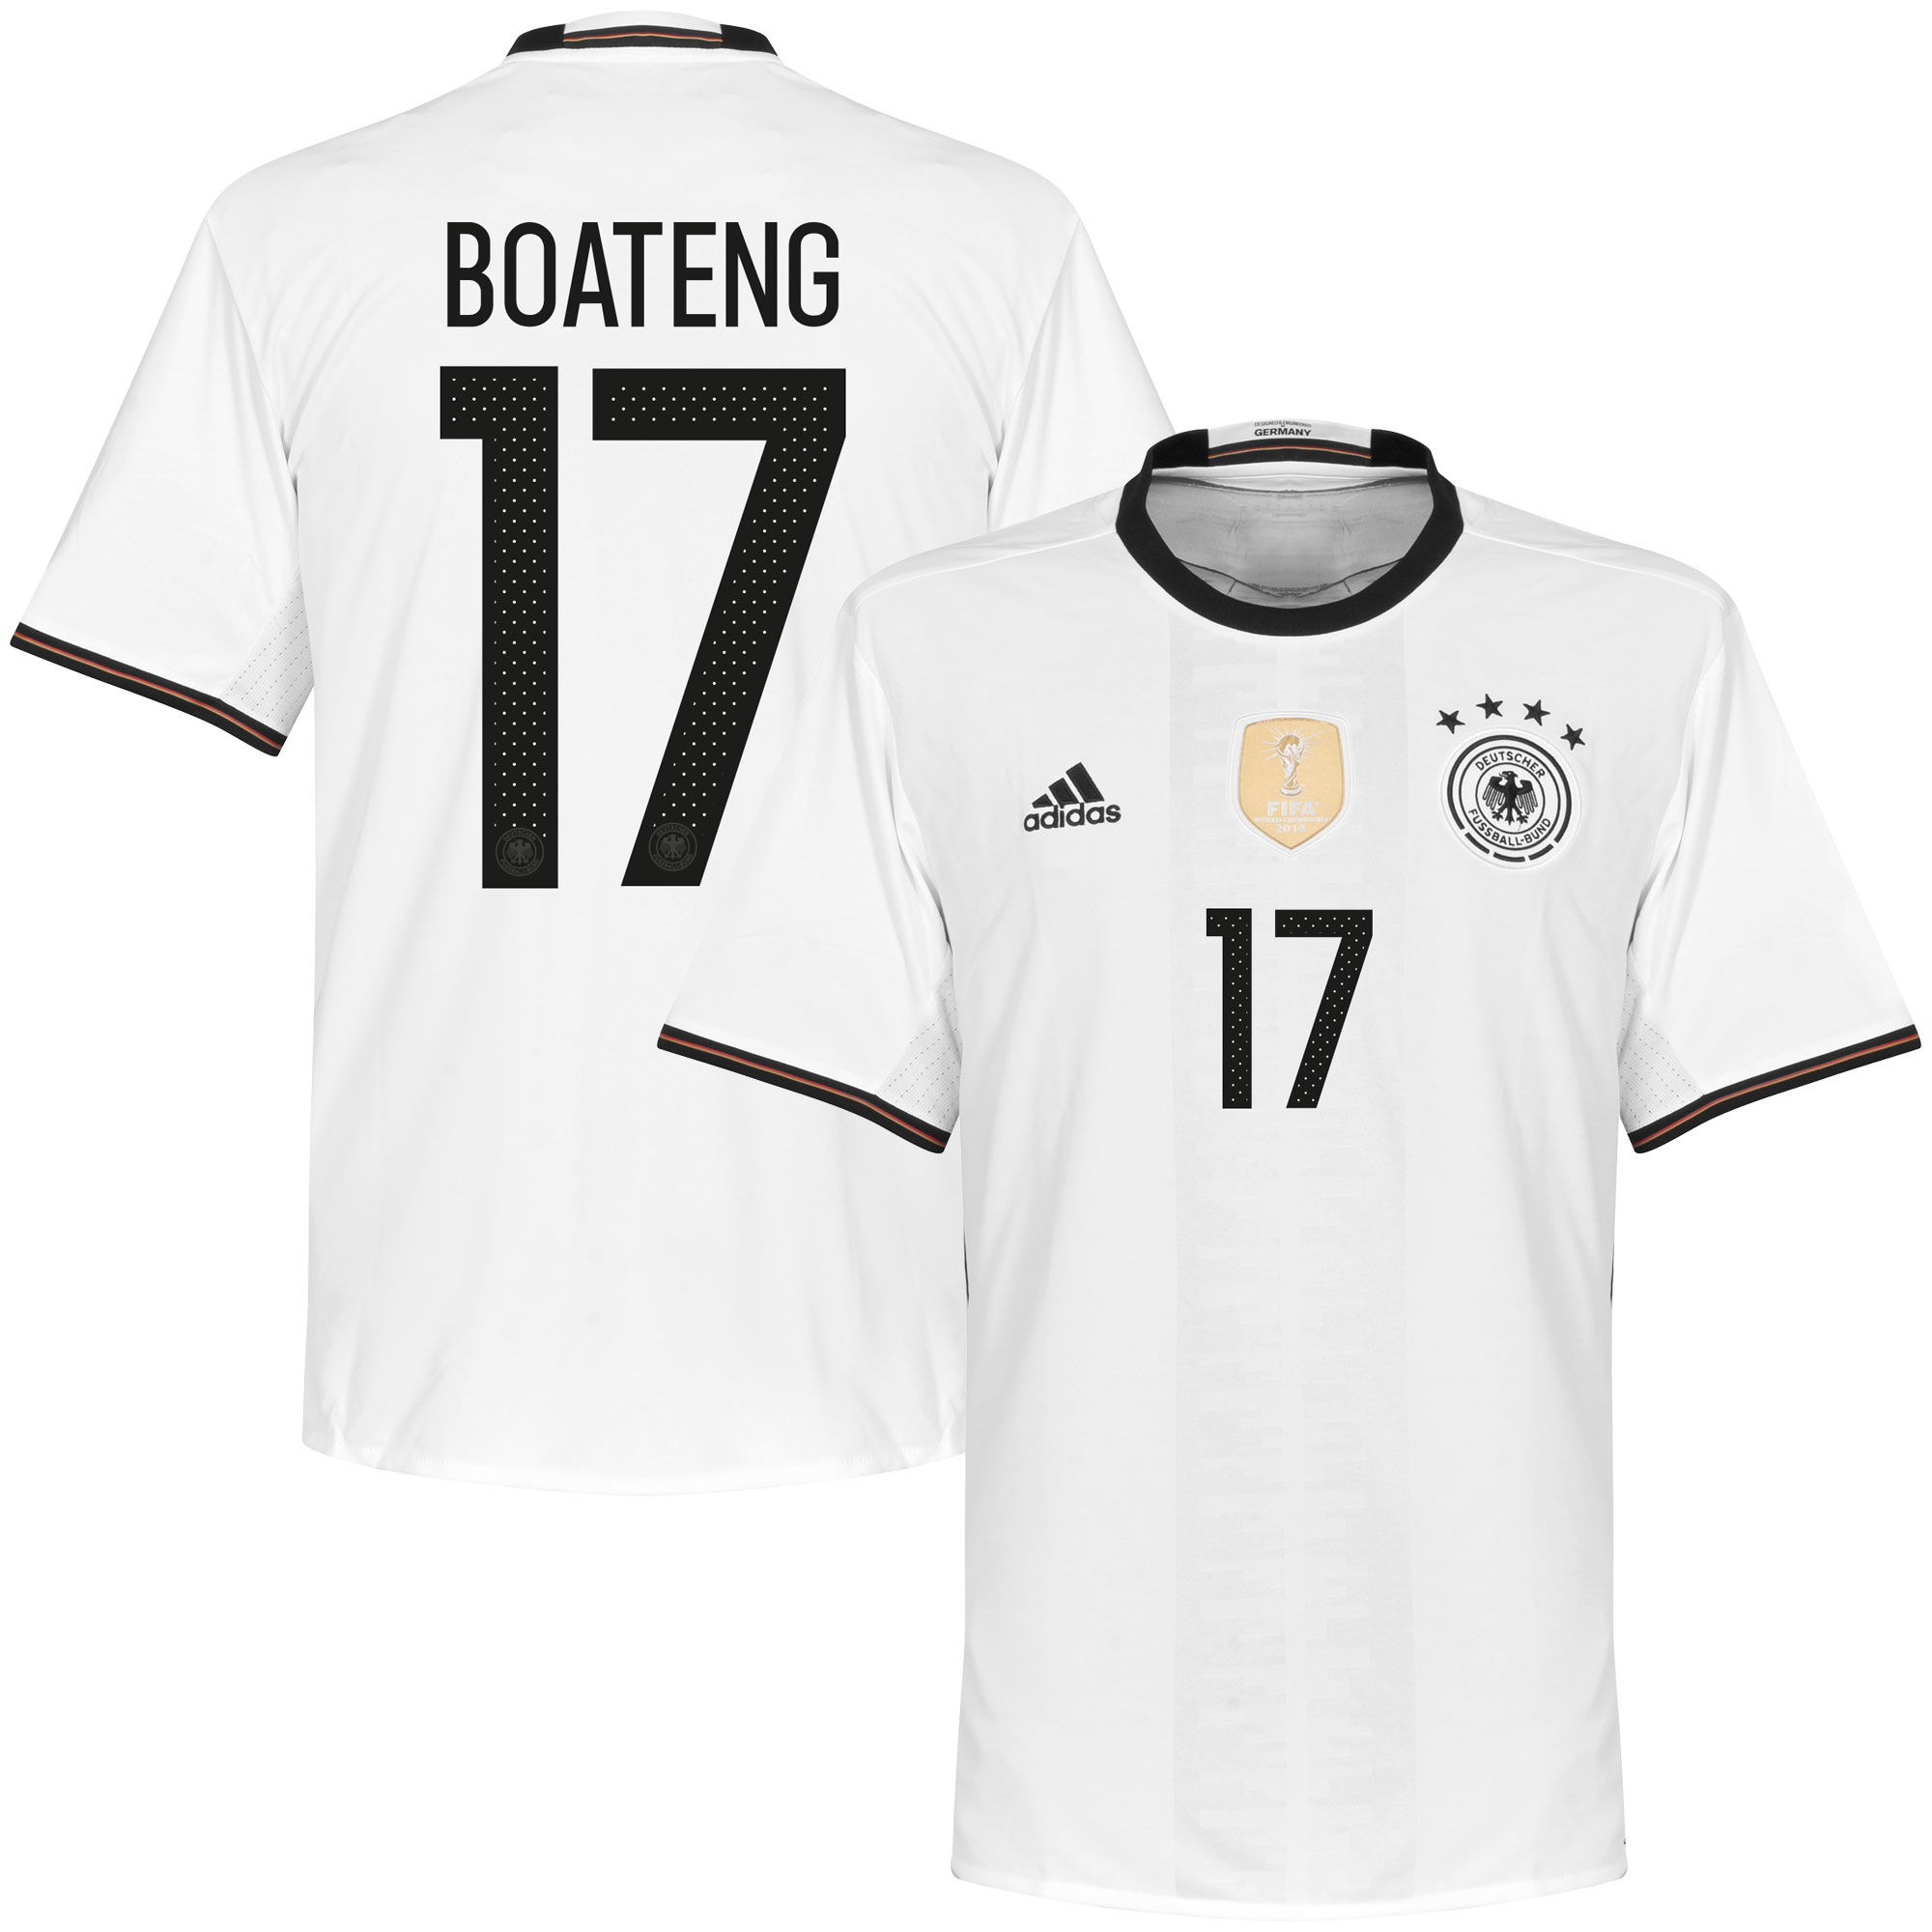 Německo - Dres fotbalový - Jérôme Boateng, sezóna 2016/2017, bílý, číslo 17, domácí